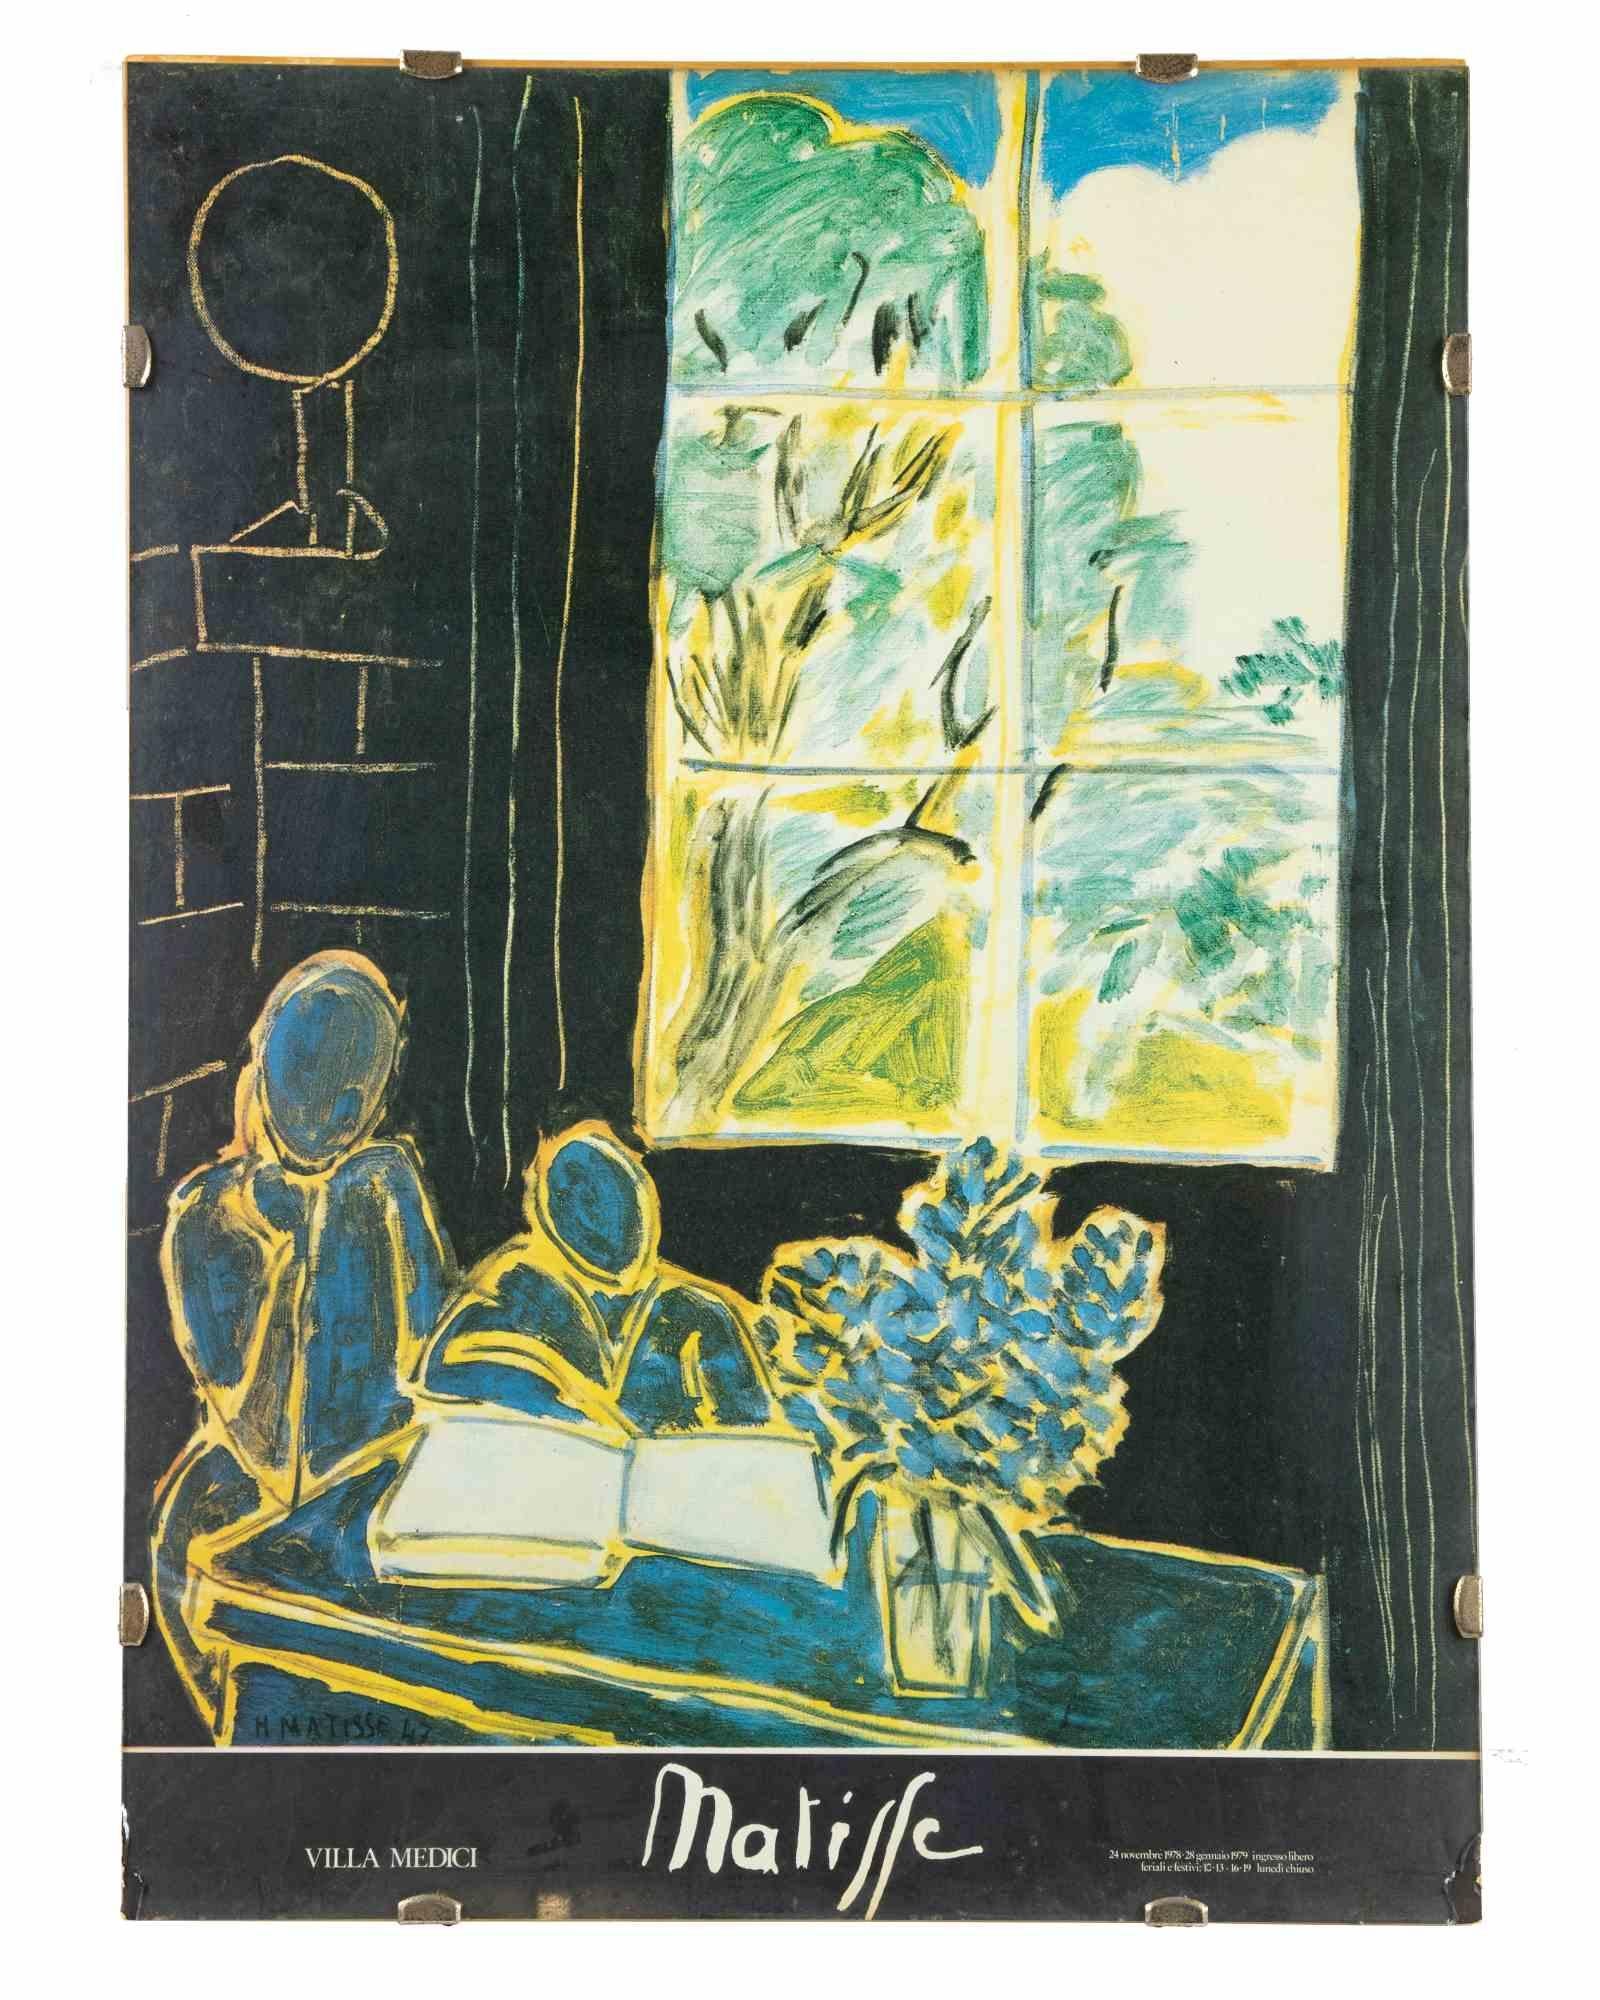 Vintage-Ausstellungsplakat von Matisse - Villa Medici - 1978 – Print von Henri Matisse